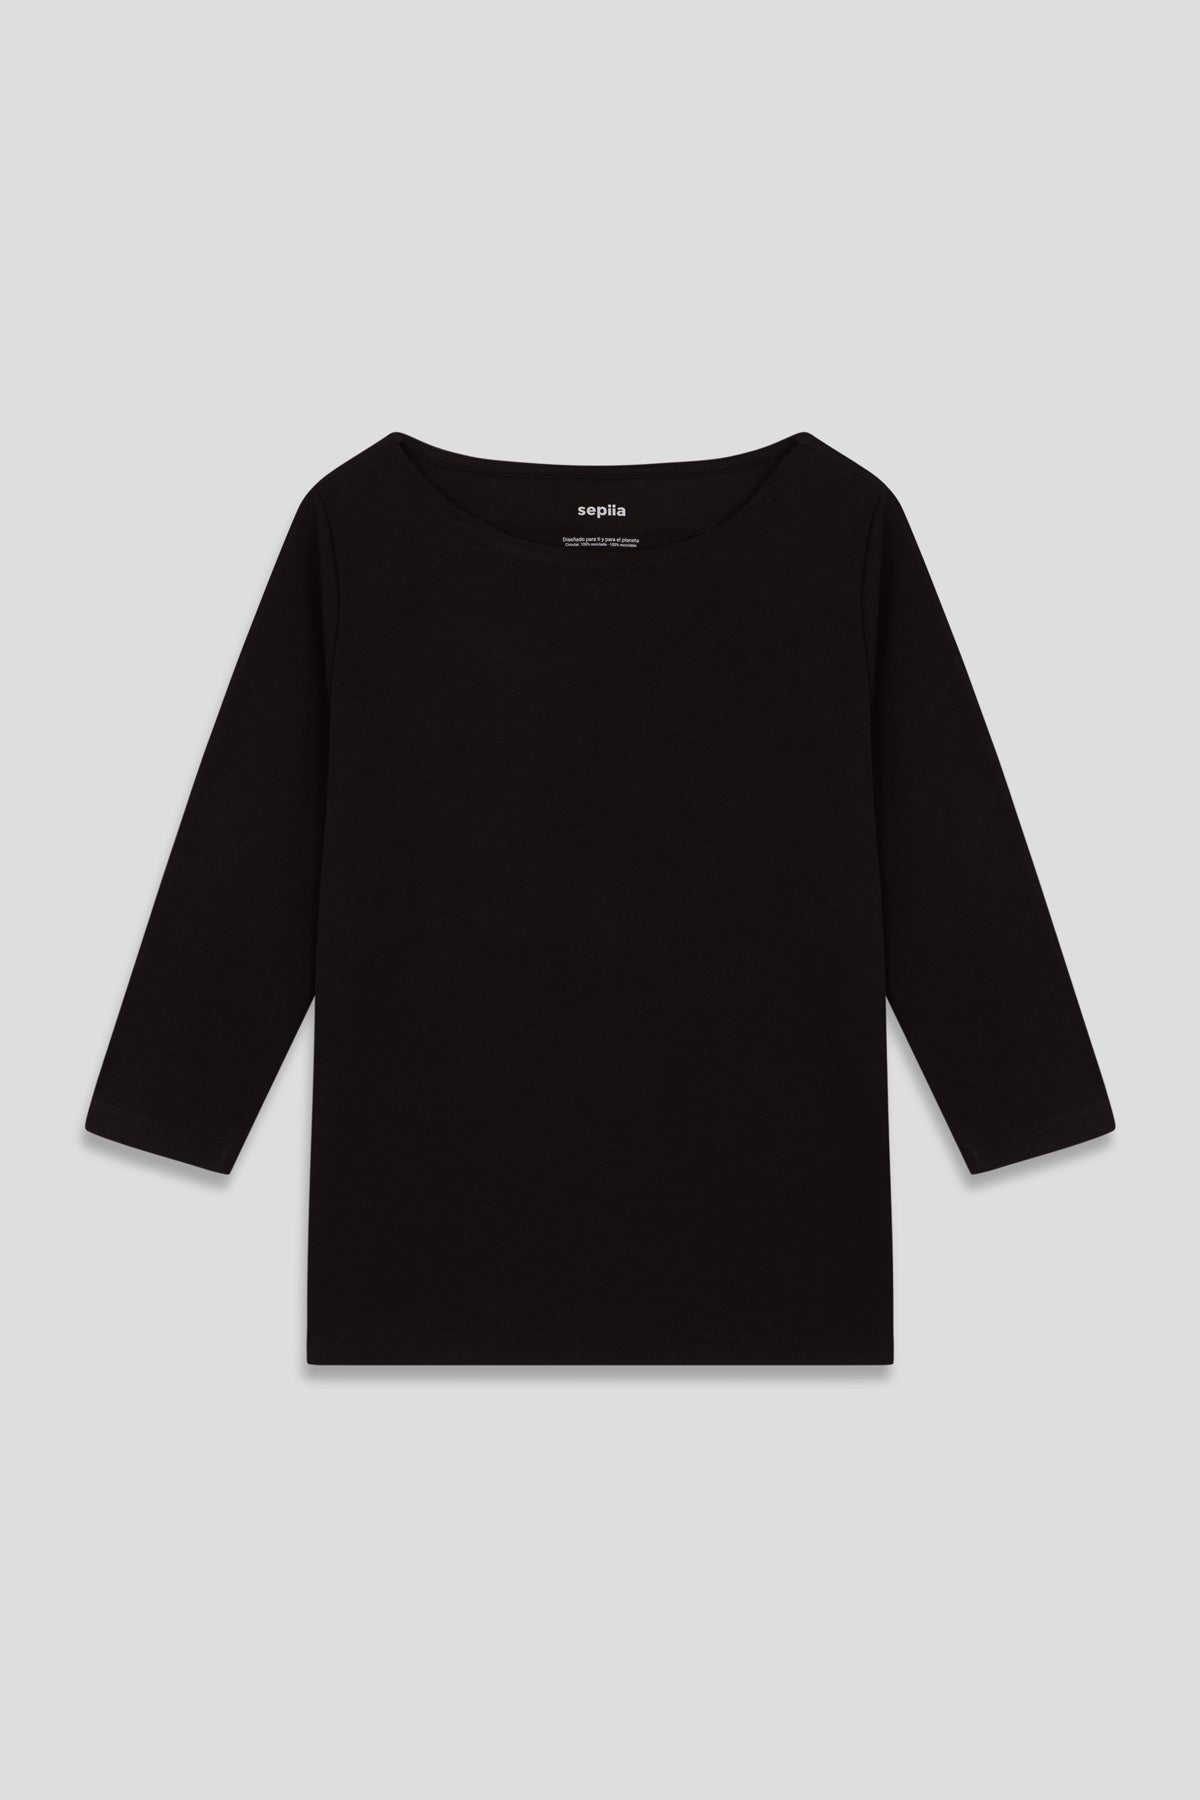 Camiseta para mujer con manga 3/4 y escote barco en color negro. Prenda básica perfecta para cualquier ocasión. Foto prenda plano